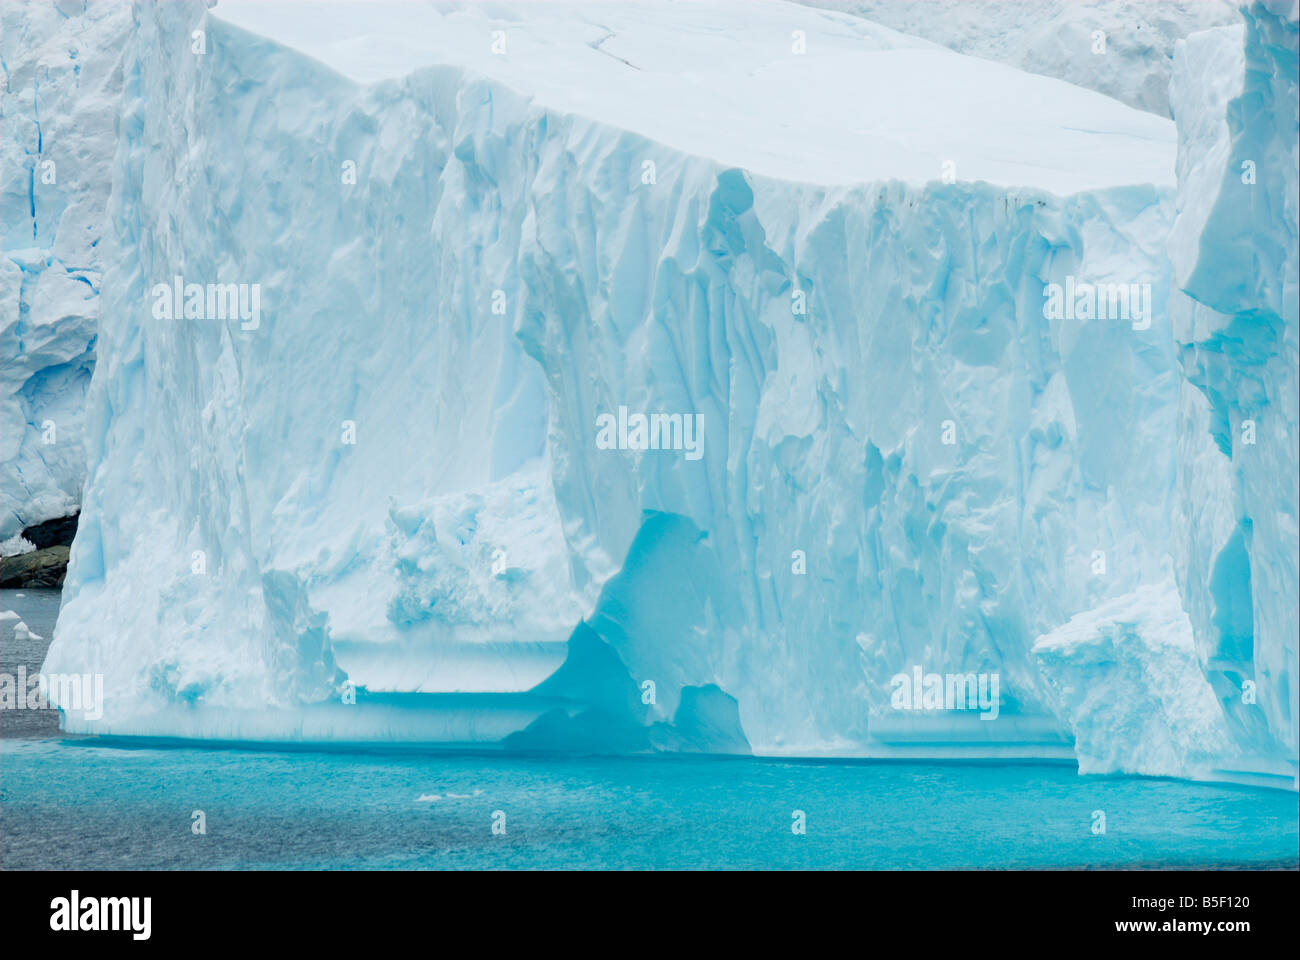 Iceberg in a bay Stock Photo